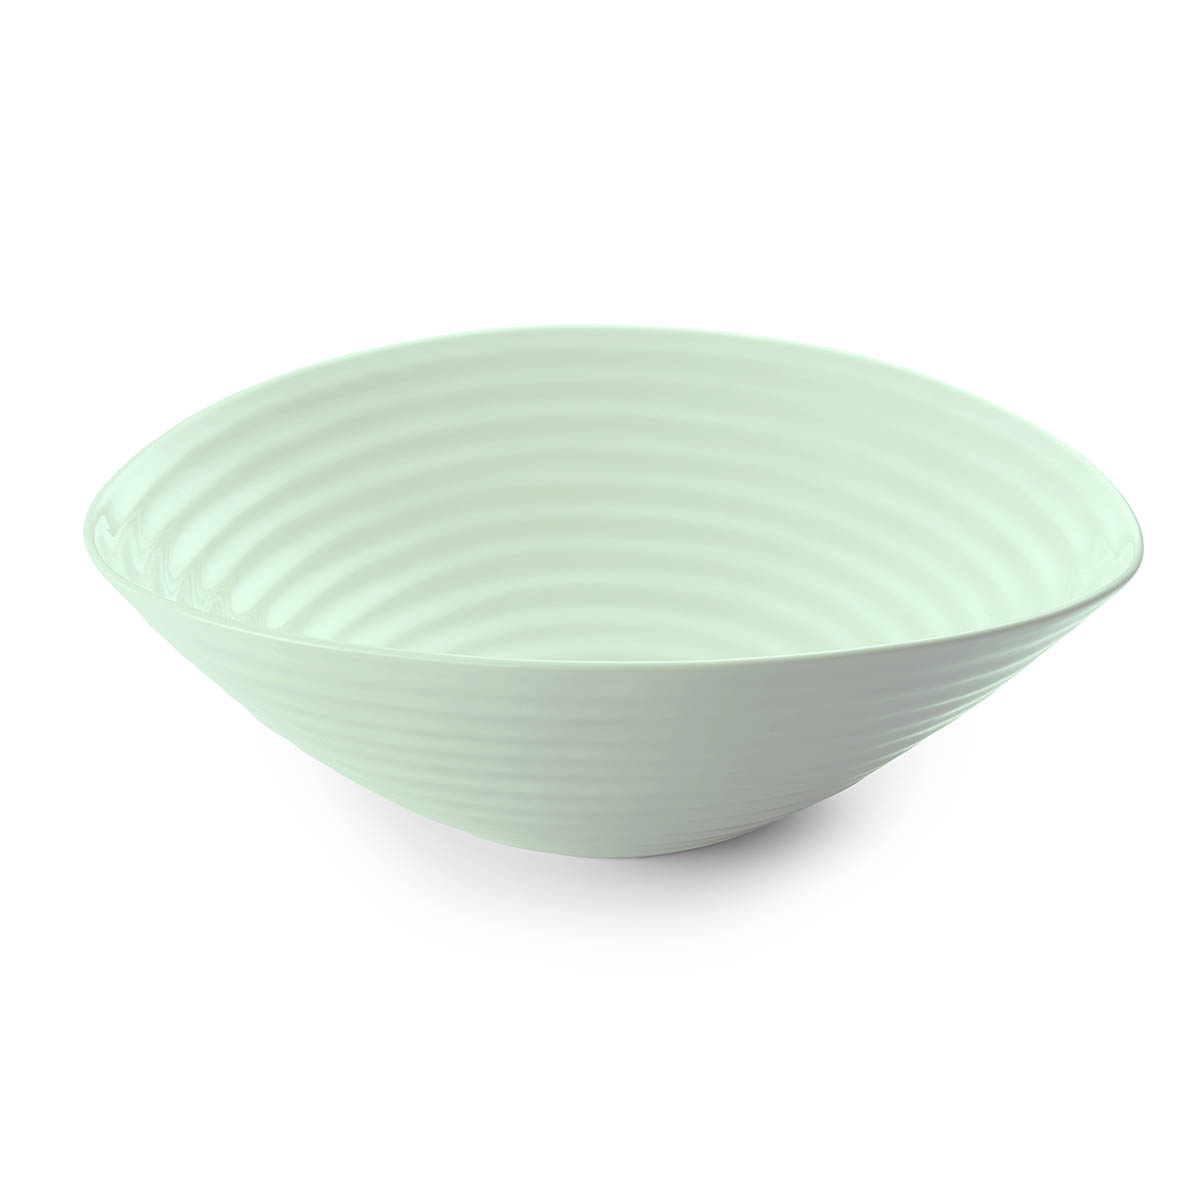 Sophie Conran for Celadon Large Salad Bowl image number null